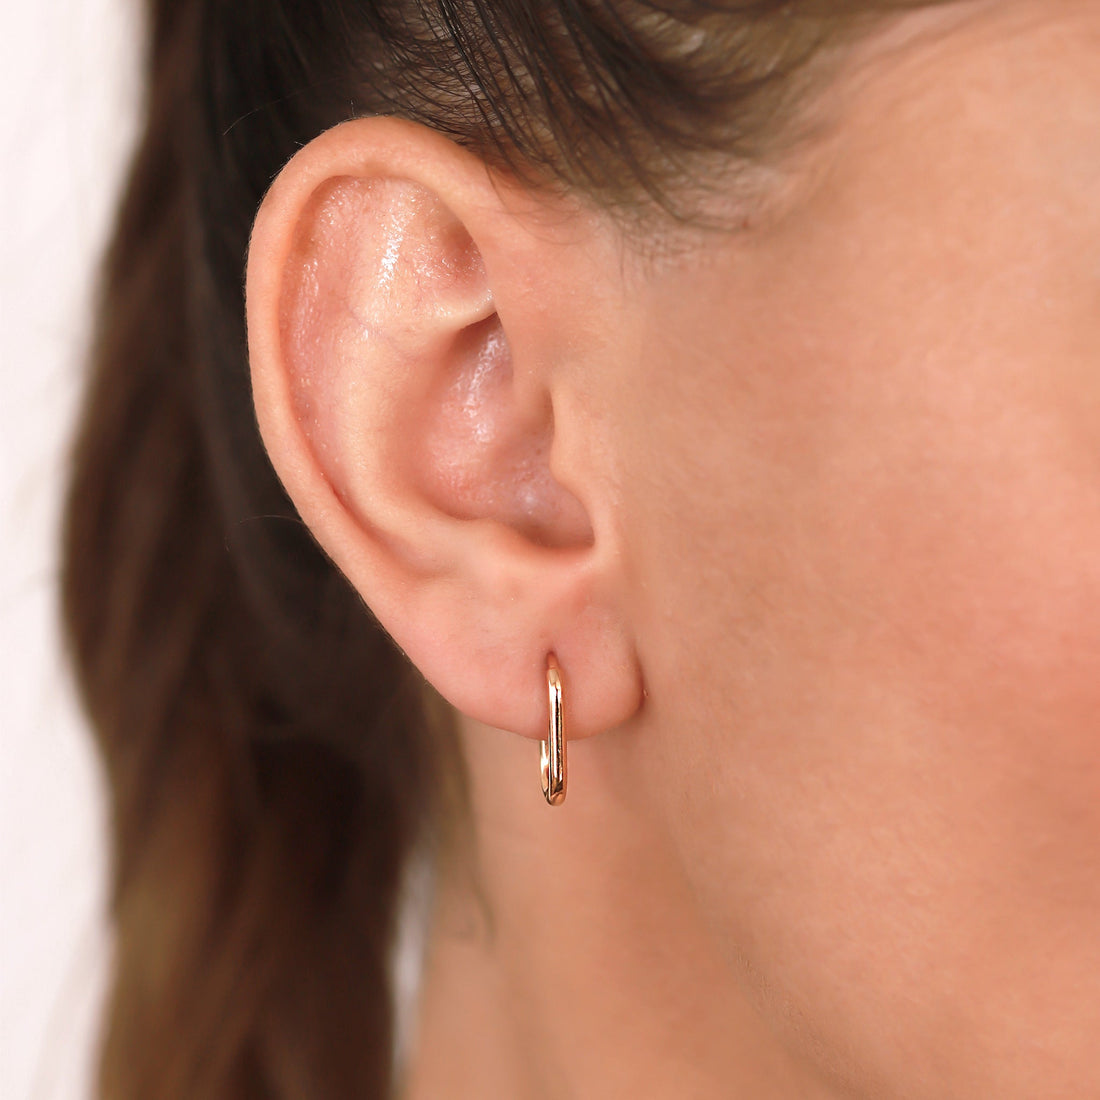 Jewelry Solid Hoops | Small Gold Earrings | 14K - Diamond earring Zengoda Shop online from Artisan Brands